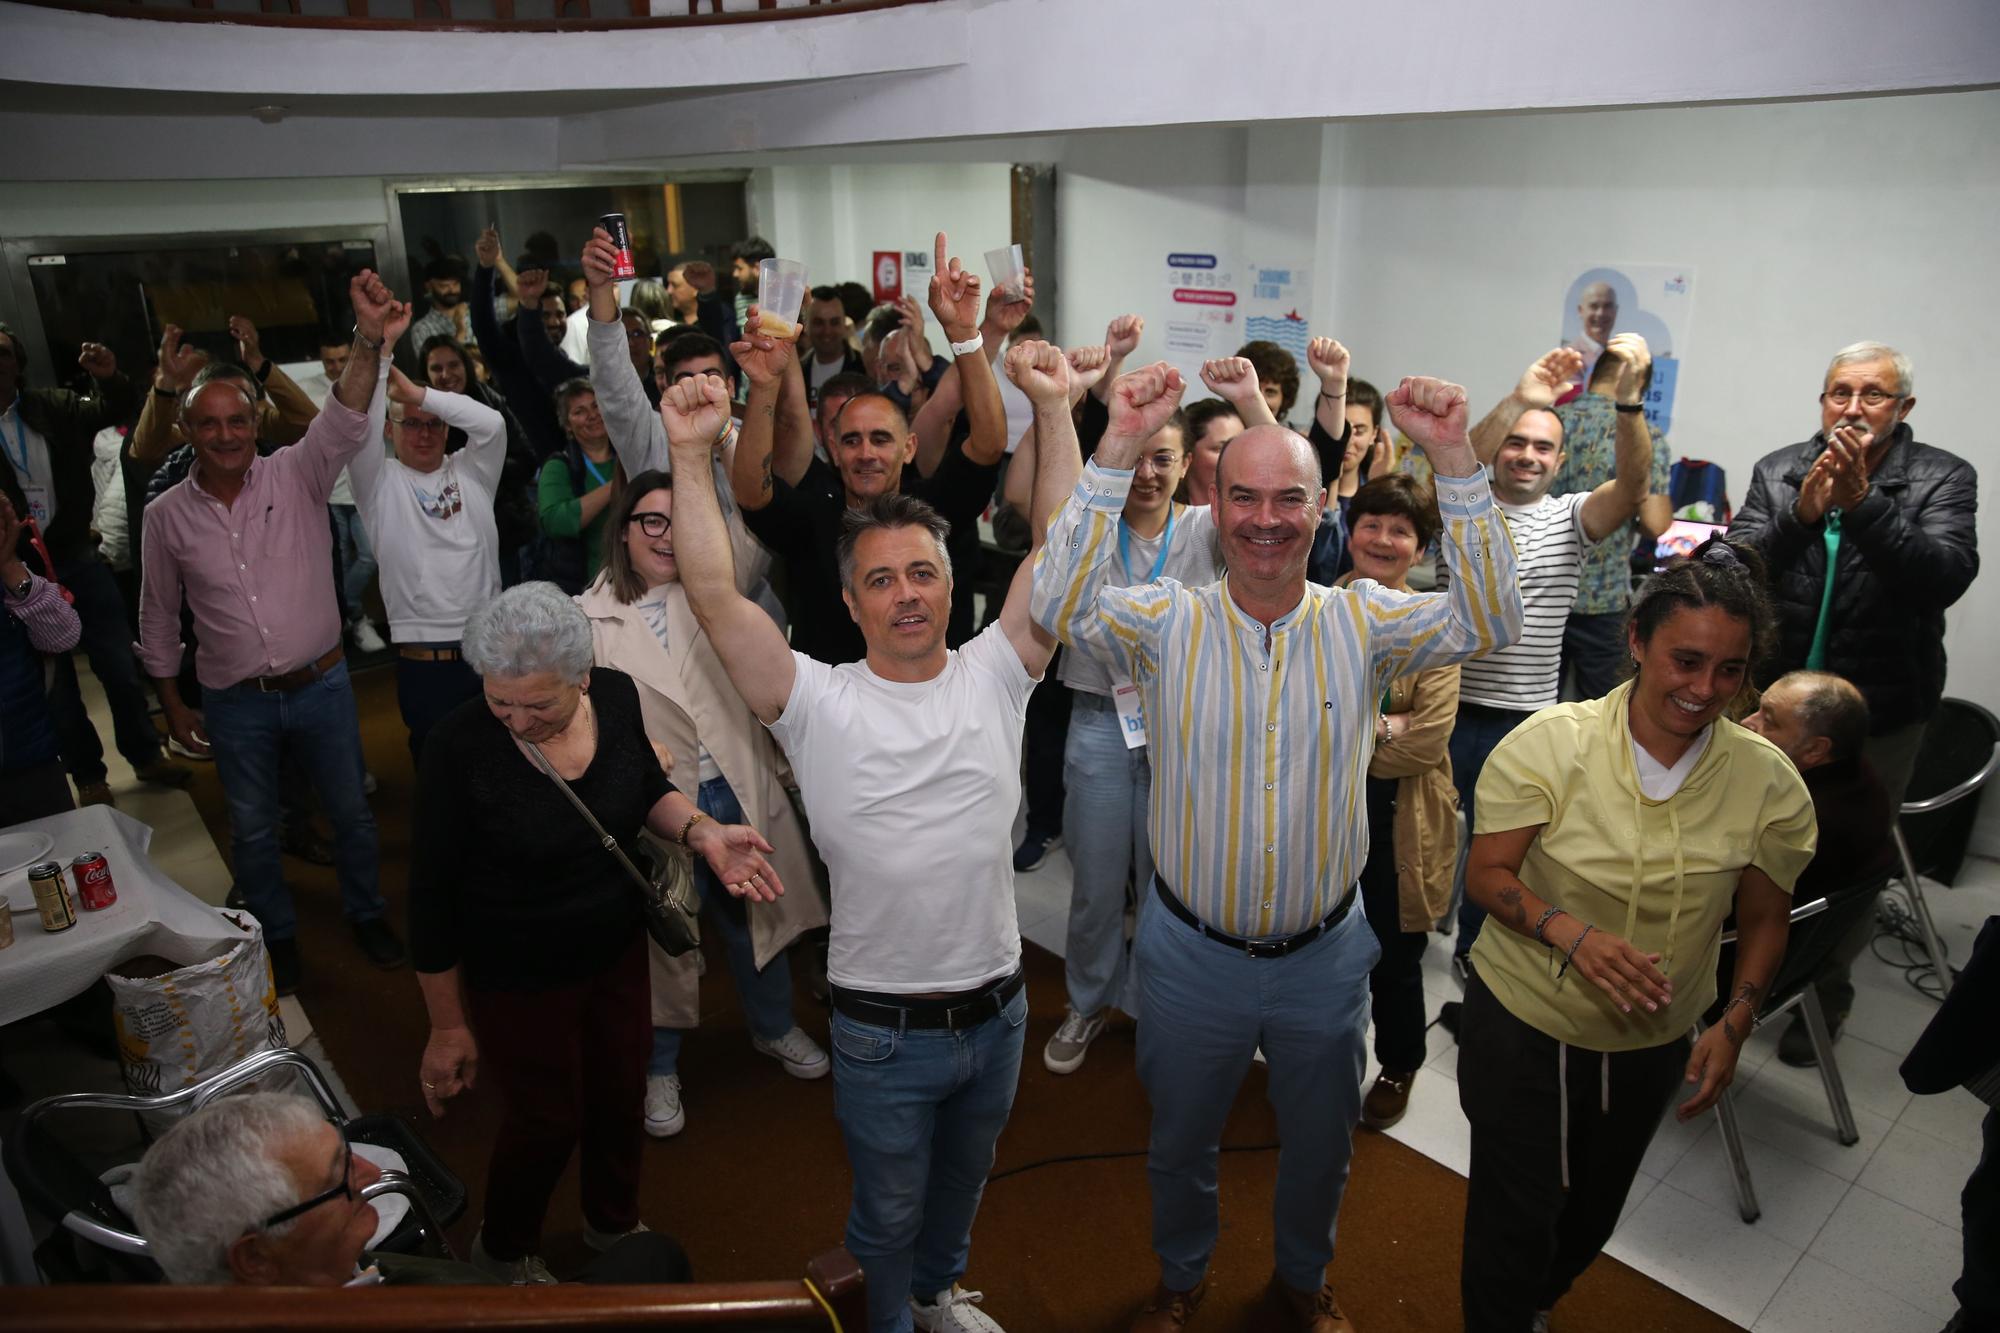 Las mejores imágenes de la jornada electoral en O Morrazo